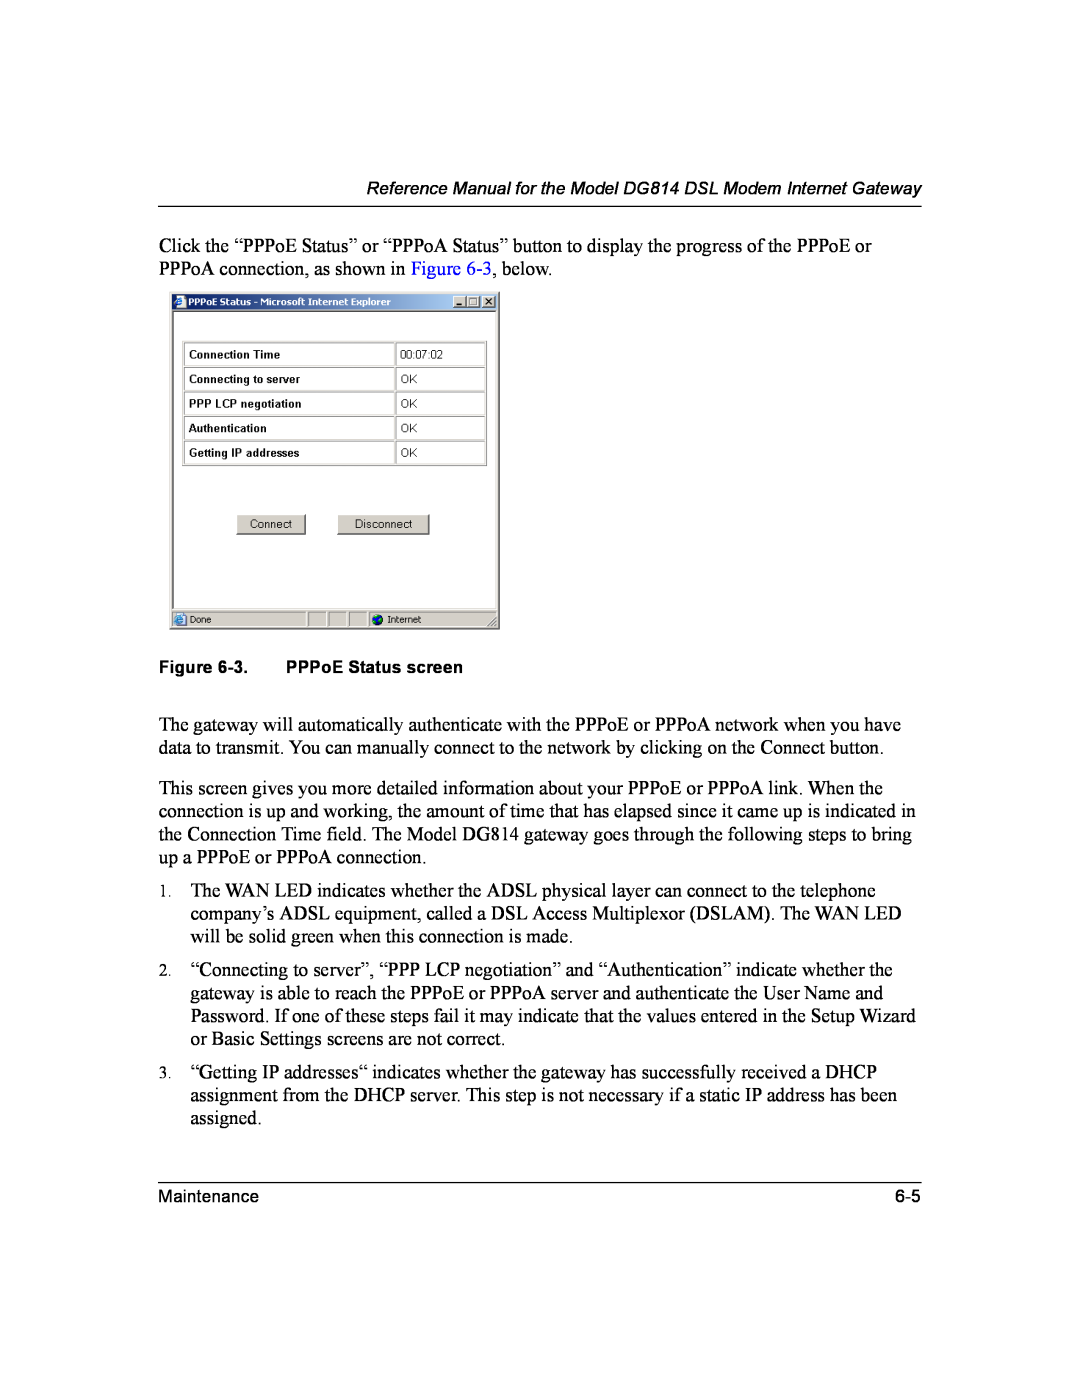 NETGEAR DG814 DSL manual 3. PPPoE Status screen 